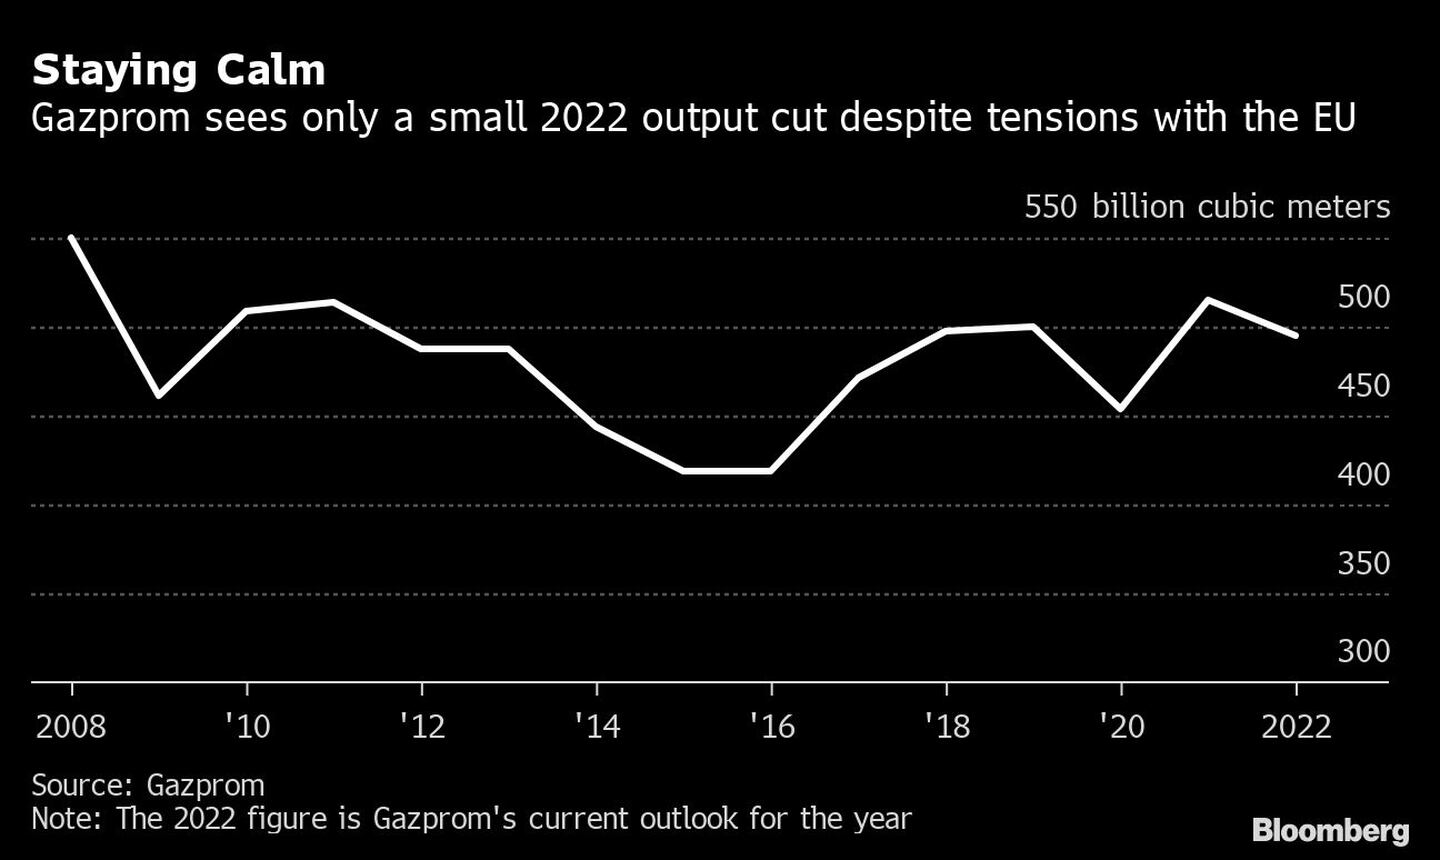 Gazprom sólo ve un pequeño recorte de la producción en 2022 a pesar de las tensiones con la UEdfd